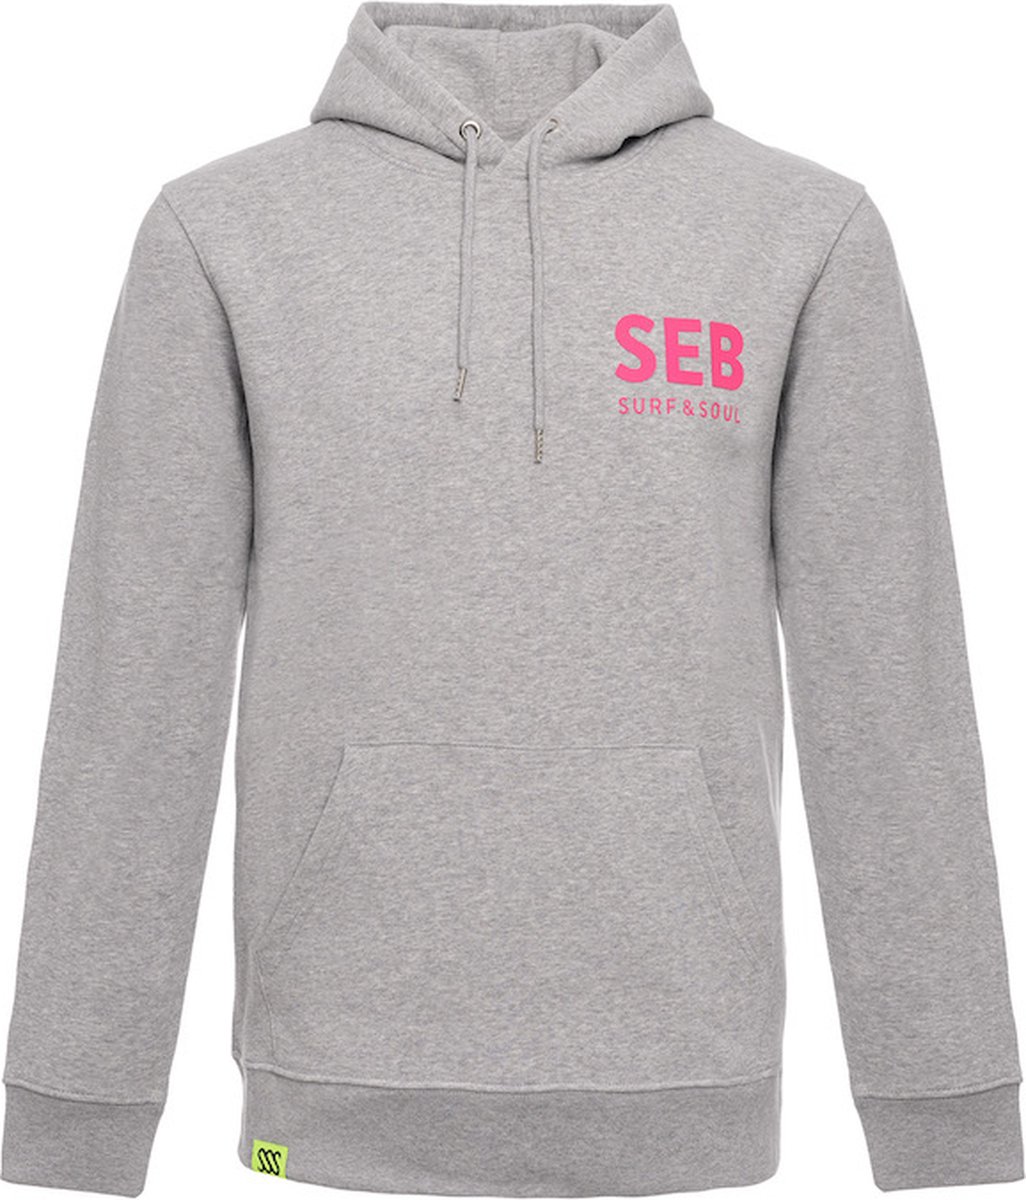 SEB Hoodie Grey - Neon Pink | Hooded sweater - Heren - Grijs - Grey melange - Neon - Organisch katoen